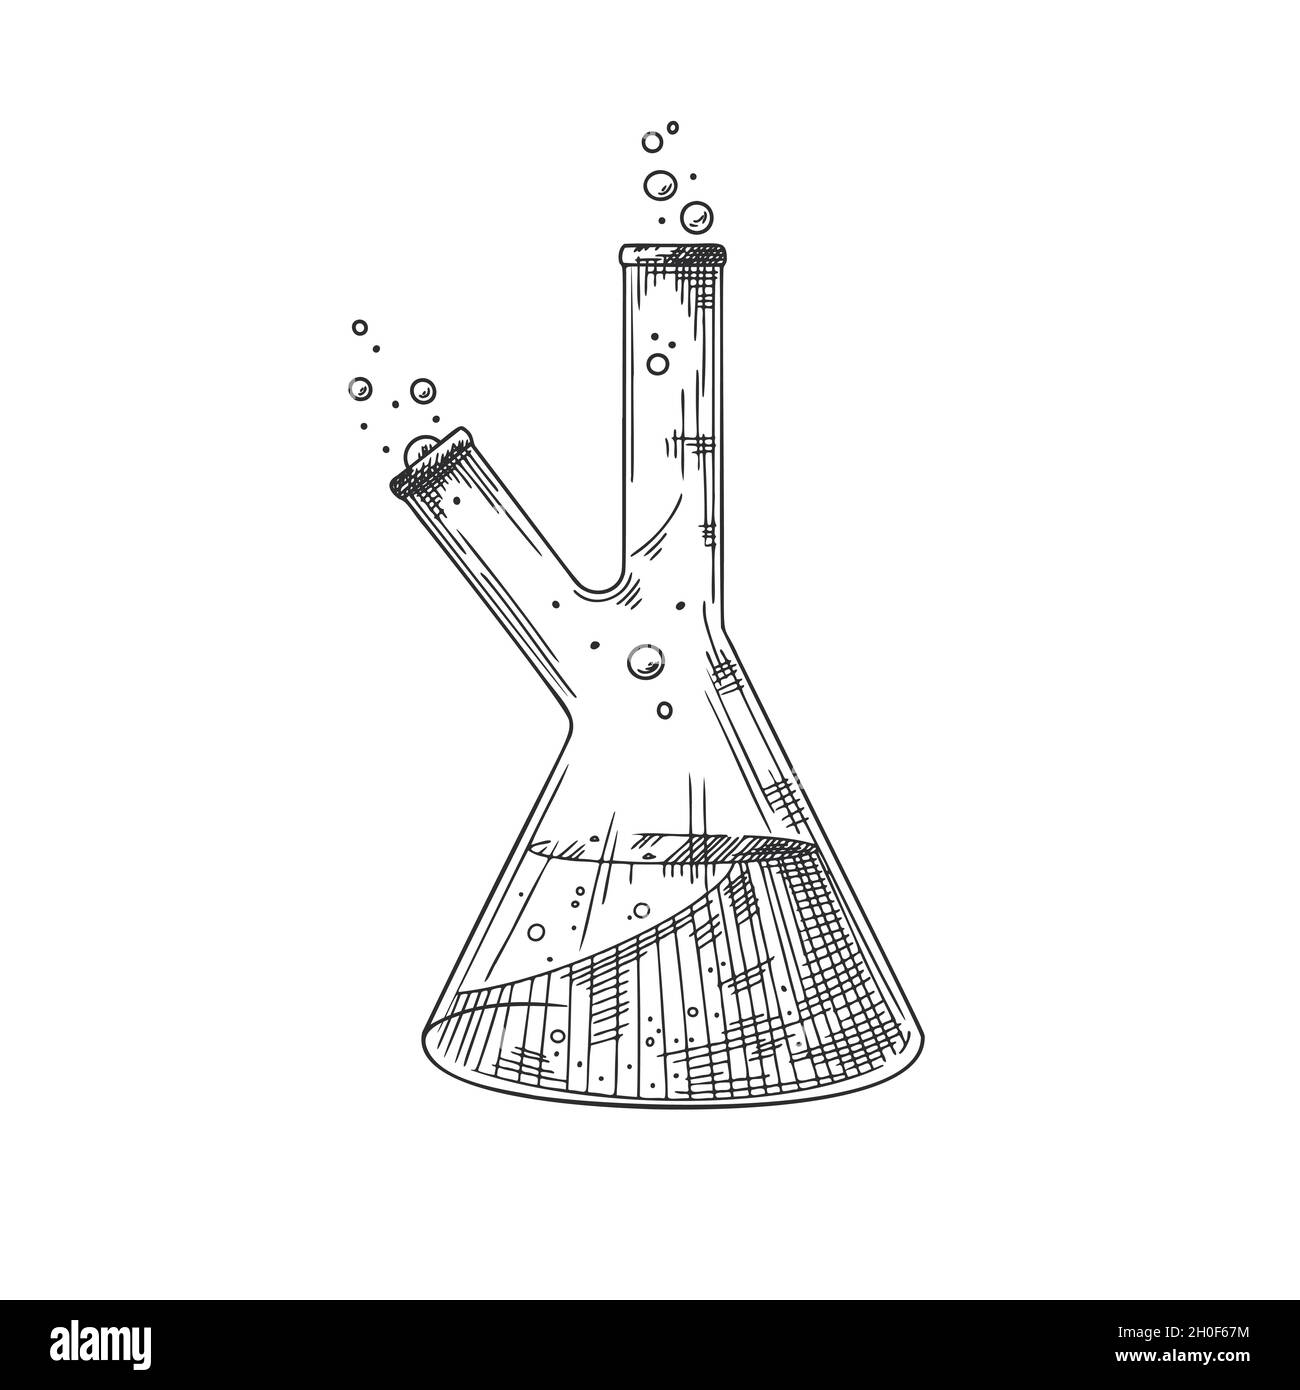 Croquis de un objeto químico de laboratorio. Matraces, vasos de  precipitados y tubos de ensayo farmacéuticos. Símbolo de descubrimiento y  química Imagen Vector de stock - Alamy